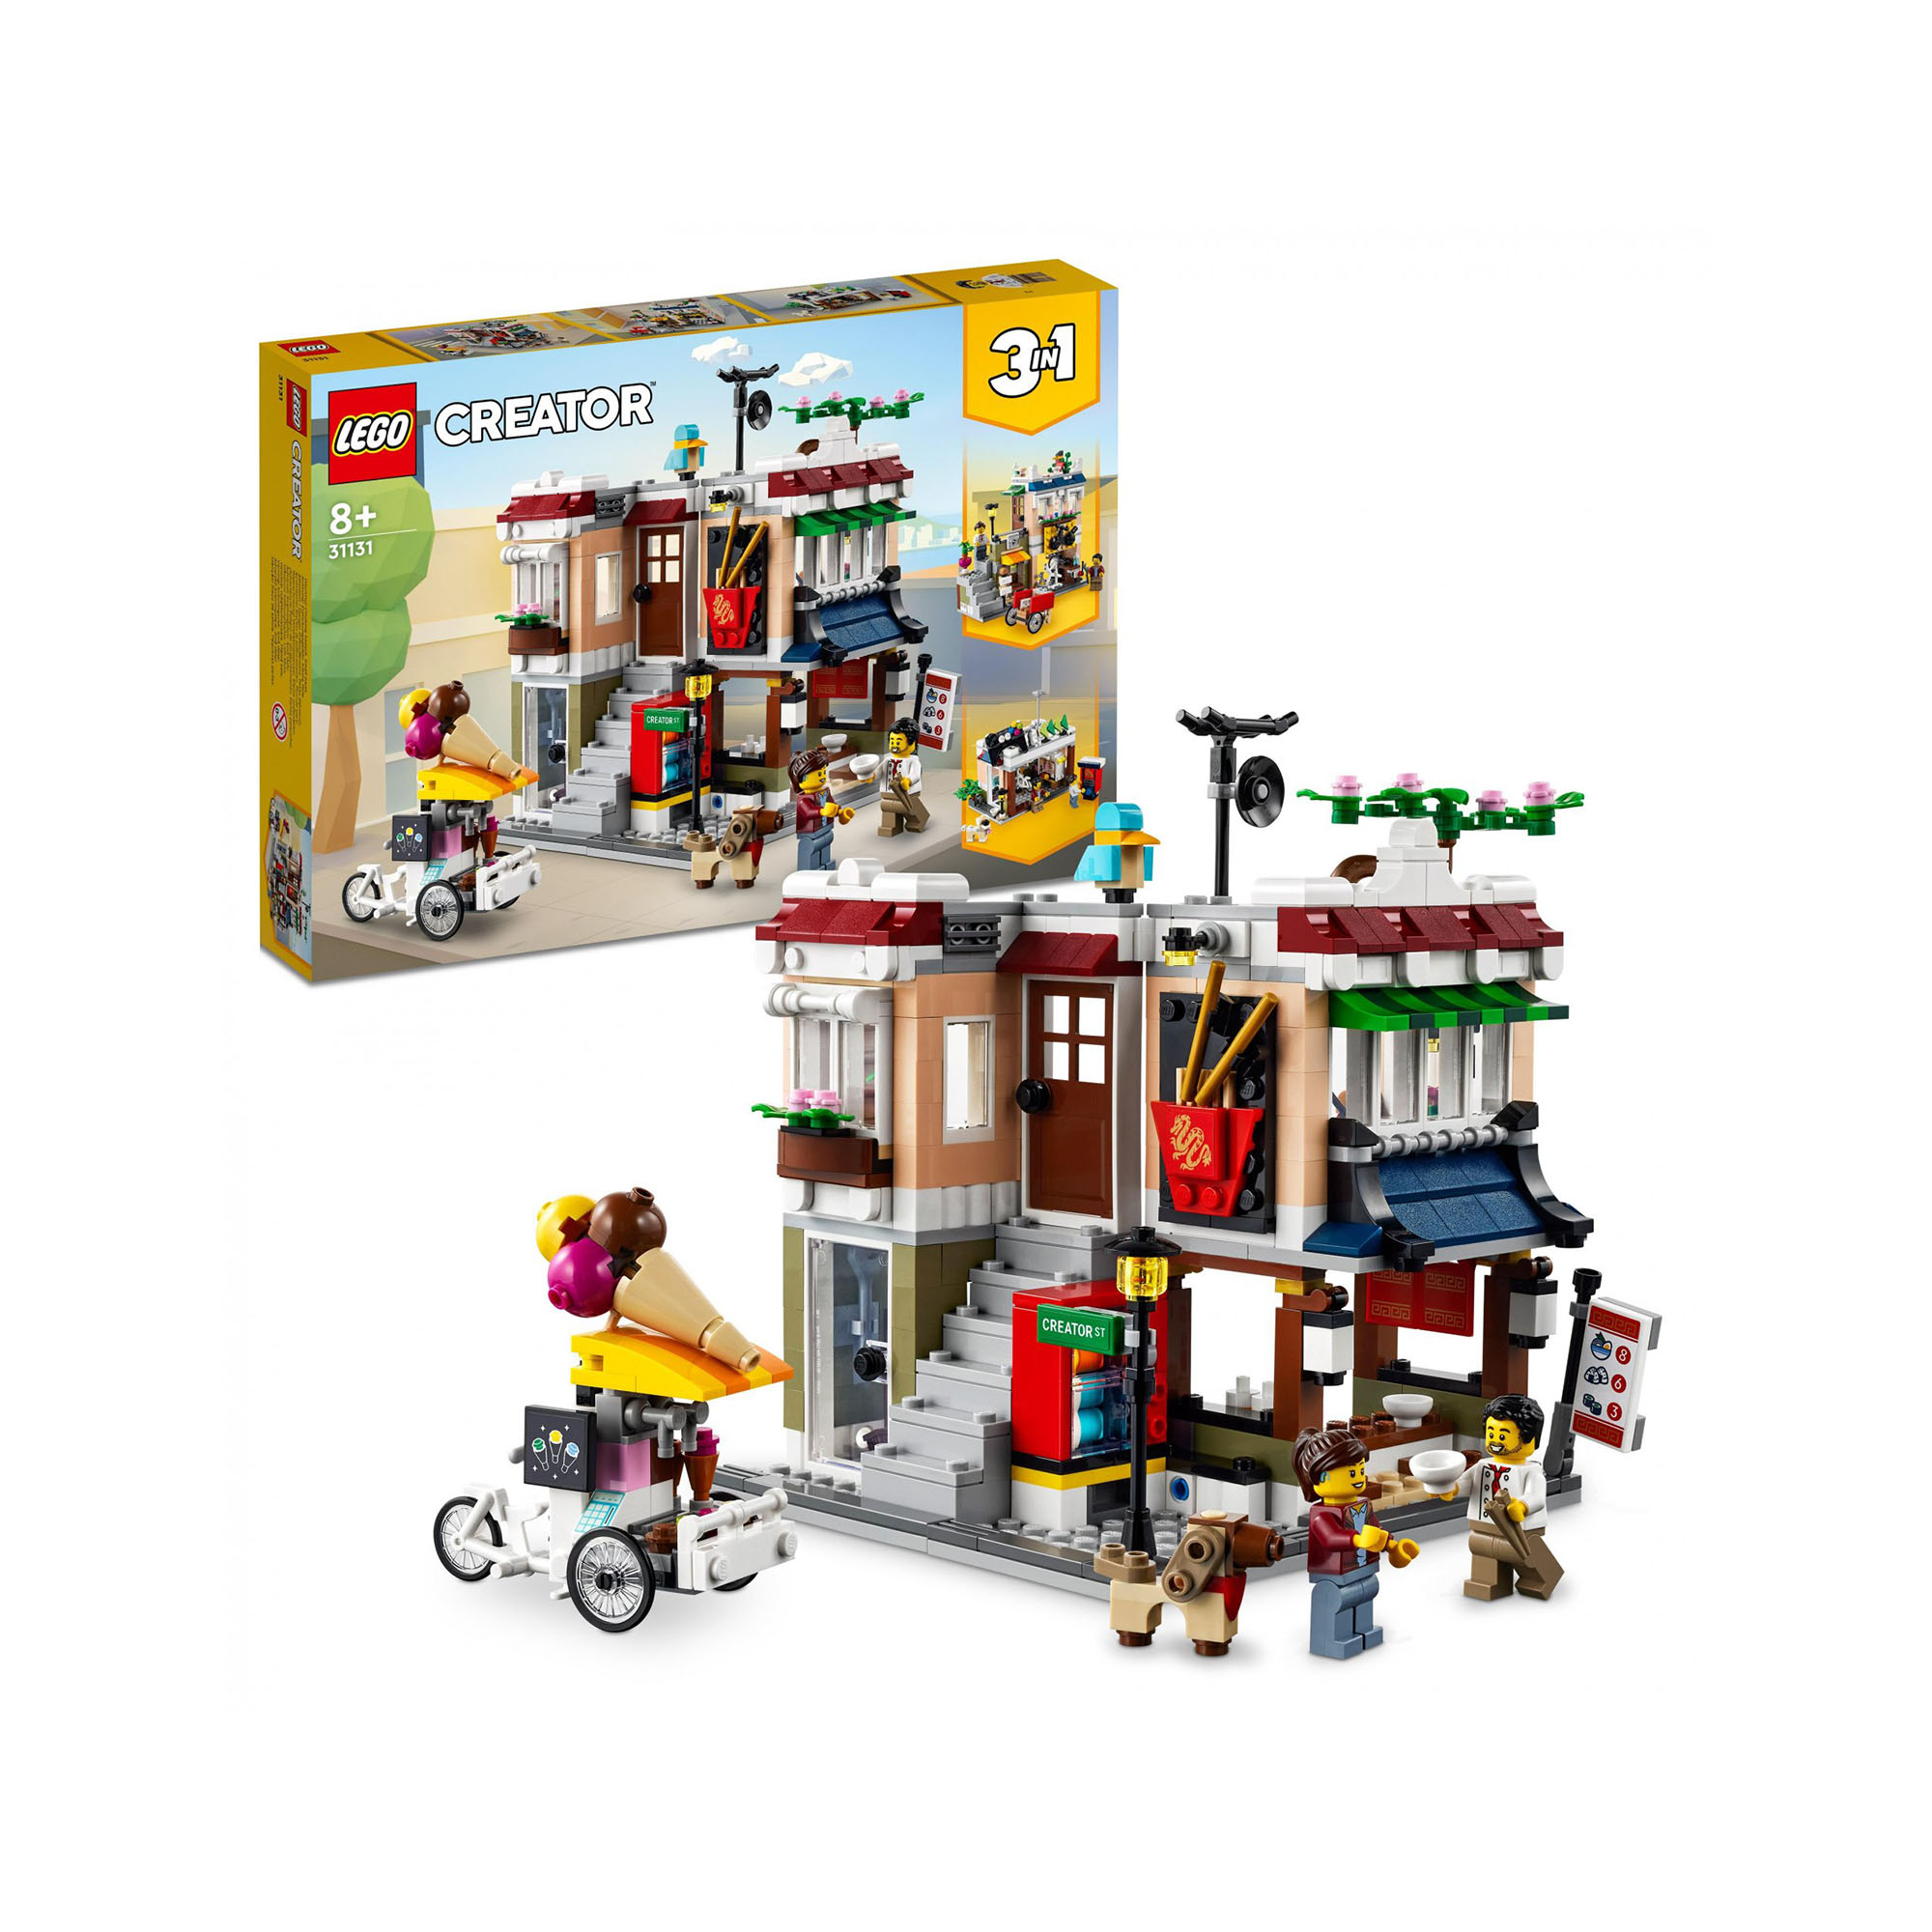 LEGO Creator 3 in 1 Ristorante Noodle Cittadino, Casa Giocattolo con Negozio Bic 31131, , large